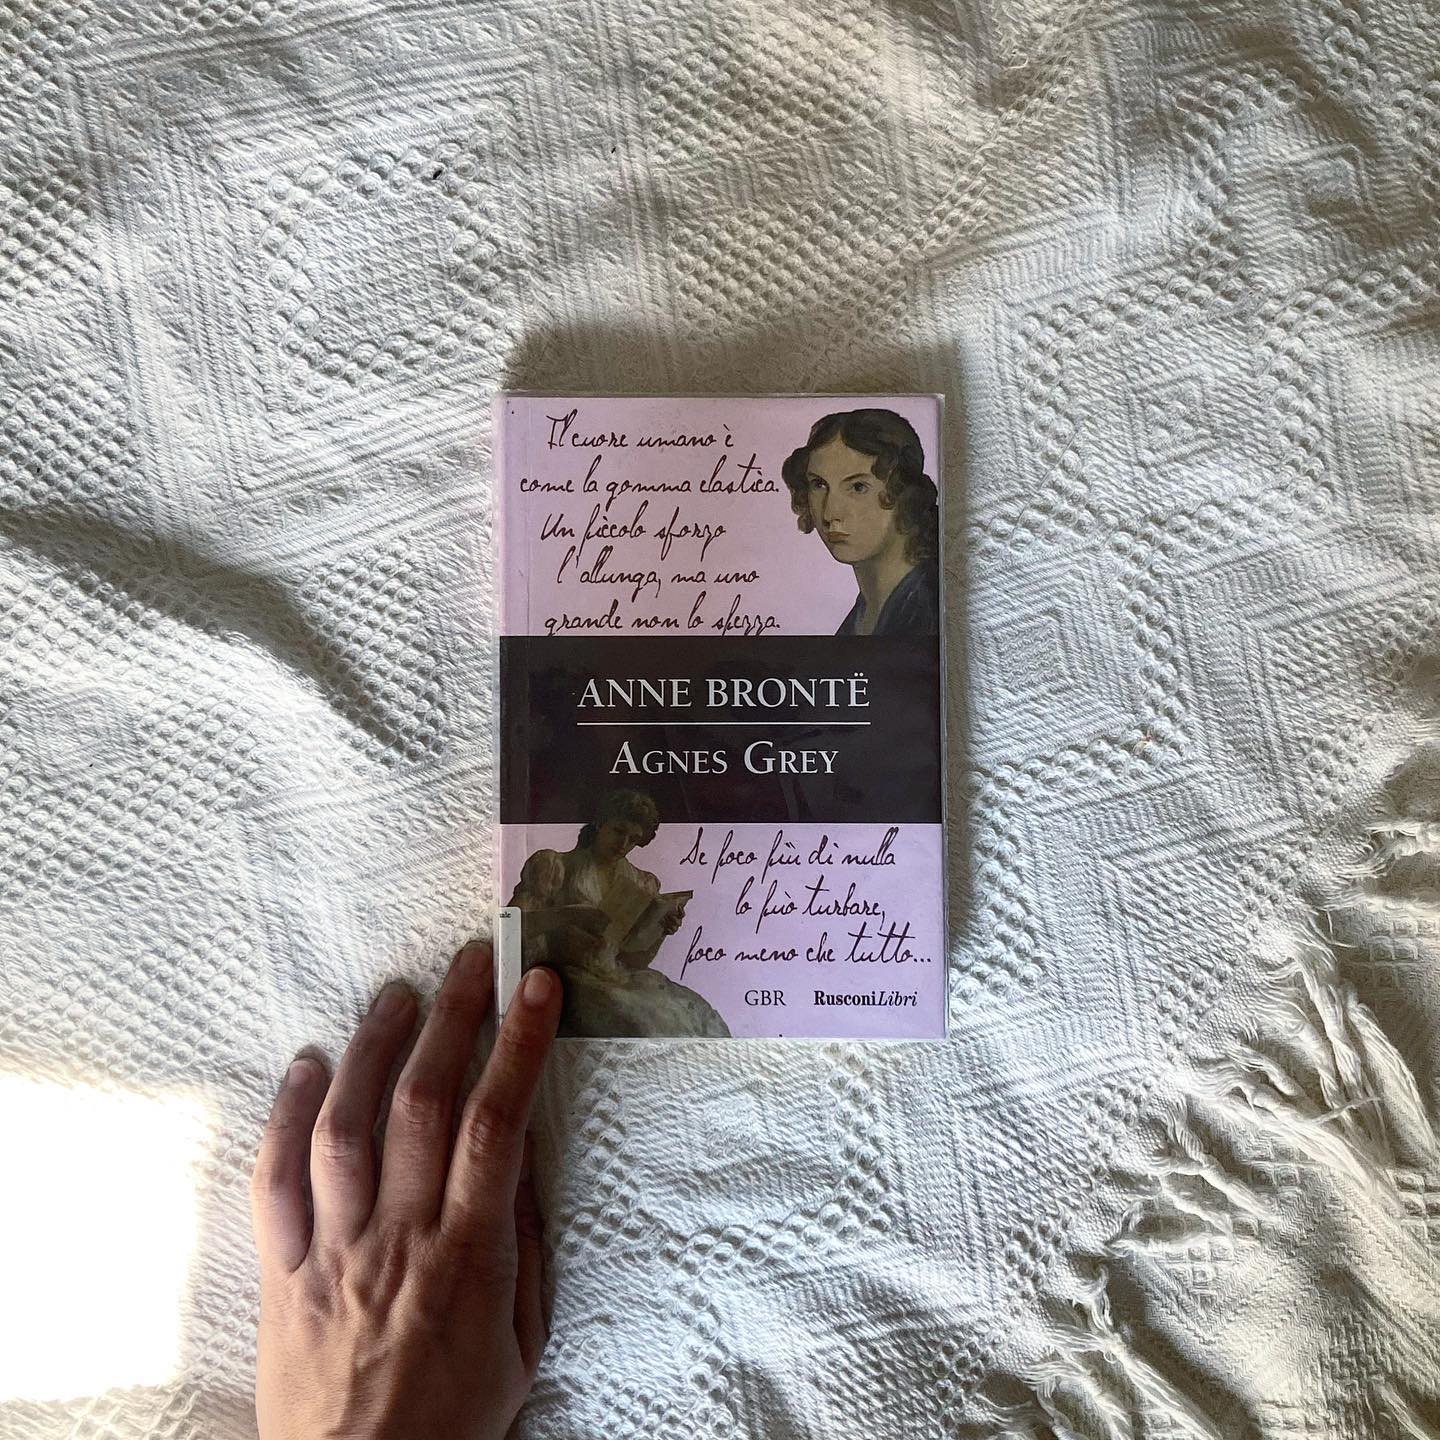 Il peso di chiamarsi Brontë 

Anne è la più piccola delle sorelle Brontë, e anche quella che passa più in sordina. Portare il peso di un cognome importante, con due sorelle che hanno esordito con Jane Eyre e Cime tempestose non deve essere stato facile, specie se anche tu hai scritto diversi romanzi. 

Io ho letto Agnes Gray, uno dei più famosi romanzi di Anne Brontë, e vi dico che è un peccato, perché dopo averlo letto posso dire che secondo me il talento era di famiglia tra le Brontë.

Il romanzo ha una trama figlia del suo tempo: Agnes è figlia di un vicario, che ha sposato una donna per amore ed ella ha rinunciato alla sua dote per sposare l’uomo dei suoi sogni. 
Per aiutare la famiglia la ragazza decide di andare a lavorare come istitutrice: seguiamo dunque la storia di questa giovane, buona umile e piena d’ideali che istruisce giovani ricchi e non sempre ben educati, alla ricerca in qualche modo del suo posto nel mondo.

Leggendo Agnes Gray si capisce perché Anne Brontë abbia suscitato meno clamore delle sorelle, con le loro storie più “forti” e in qualche caso scandalose per i propri tempi. 
Anne racconta di un personaggio defilato, meno impetuoso di Catherine o Jane, ma buono e volenteroso, che cerca il bene e bello in tutto ciò che la circonda. Nonostante dunque la protagonista non sia l’eroina o l’antieroina raccontata dalle sorelle, Agnes ha di certo una caratterizzazione e un evoluzione molto interessante, e ed è un personaggio alla quale è difficile non affezionarsi.

Il romanzo ha una parabola intuibile, ma coinvolge nelle avventure, disavventure e tragedie che accadono alla dolce Agnes. Si legge facilmente nelle sua prospettiva di racconto diretto dalla voce della protagonista, una voce composta ma che dà personalità alla storia. 

Agnes Gray è un classico piacevole e scorrevole, dal retrogusto autobiografico che ci racconta la società del tempo, e la vita di una istitutrice che cerca la sua strada nel mondo; il racconto di una ragazza pura, che non piega i suoi valori nonostante le cose che è costretta a subire. E anche se non fa tanto rumore, Agnes Gray è un gran bel classico da leggere, senza fare troppi paragoni.